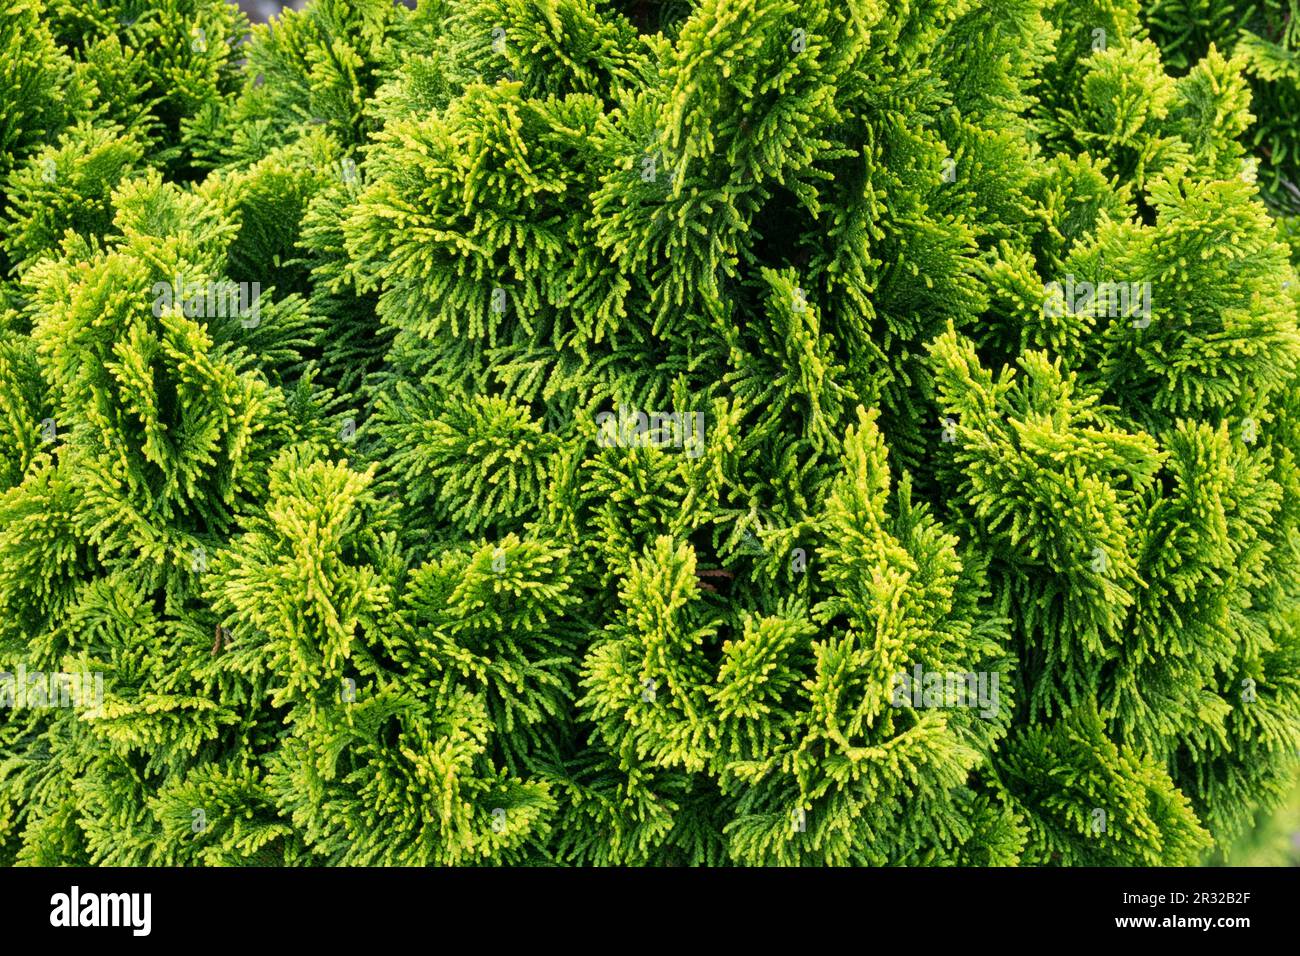 Japanese Cypress, Hinoki Cypress 'Nana Aurea', Chamaecyparis obtusa 'Nana Aurea' Stock Photo